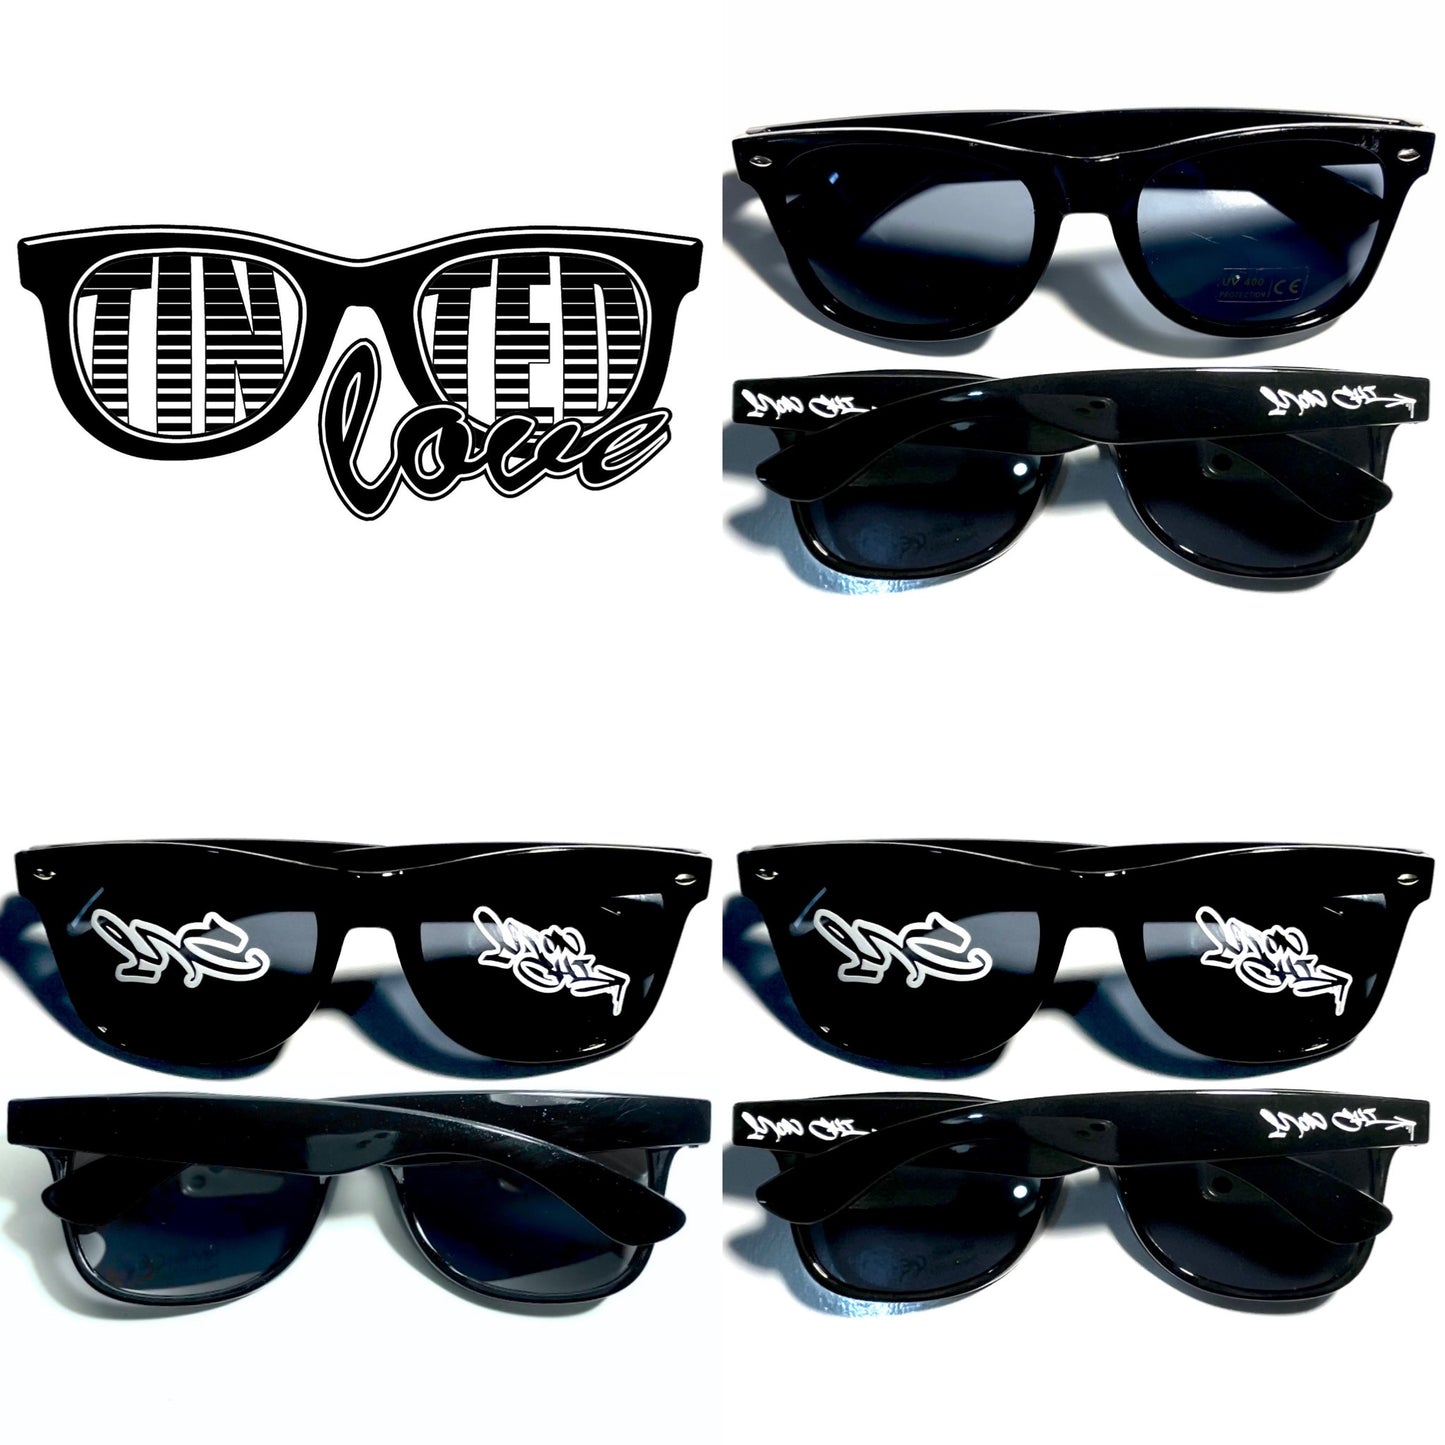 Mon-Chi Sunglasses